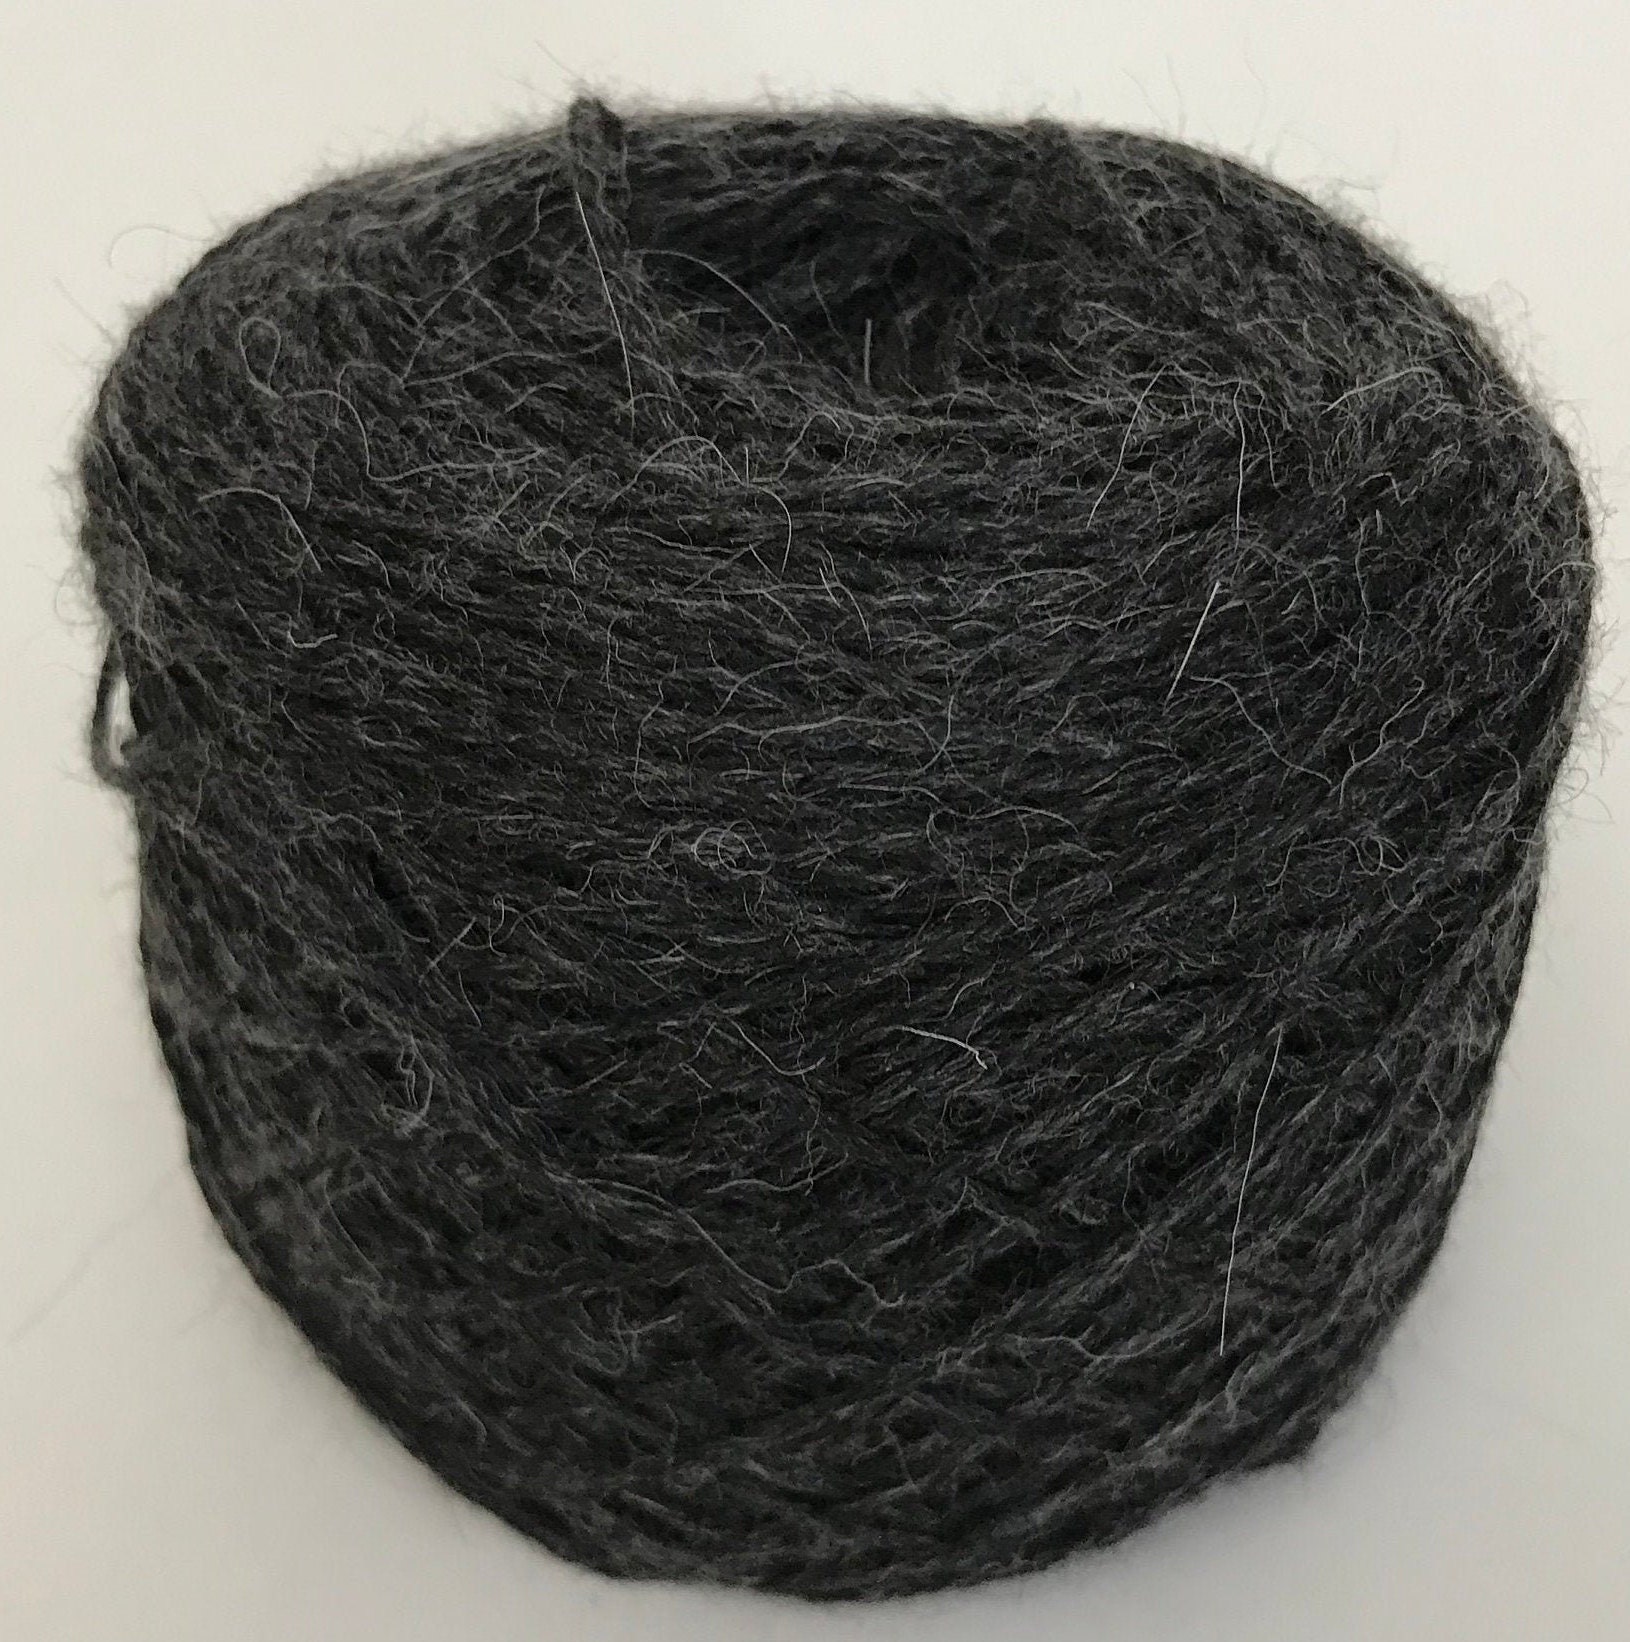 Llama Yarn, Black